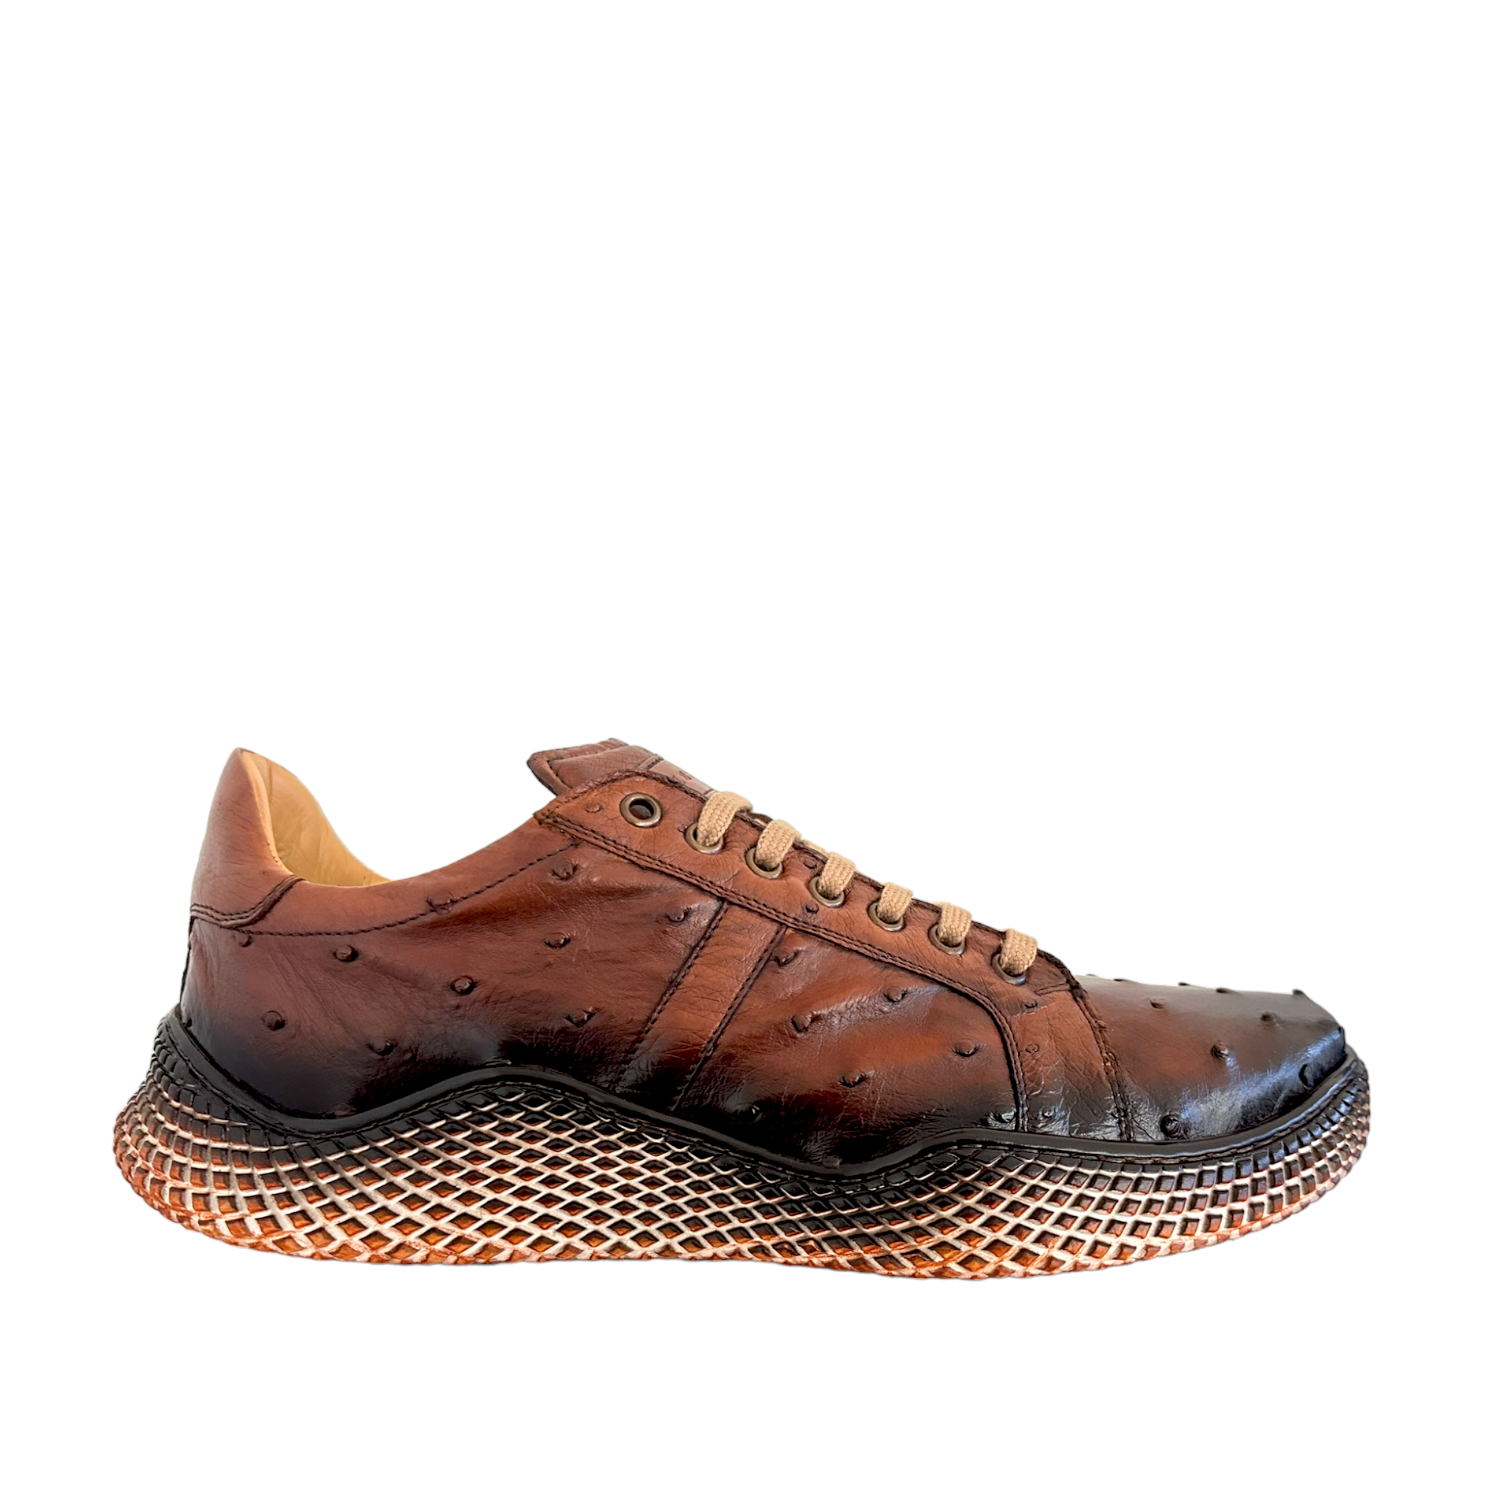 Louis Vuitton mens shoes dress 7.5 - 8.5 us